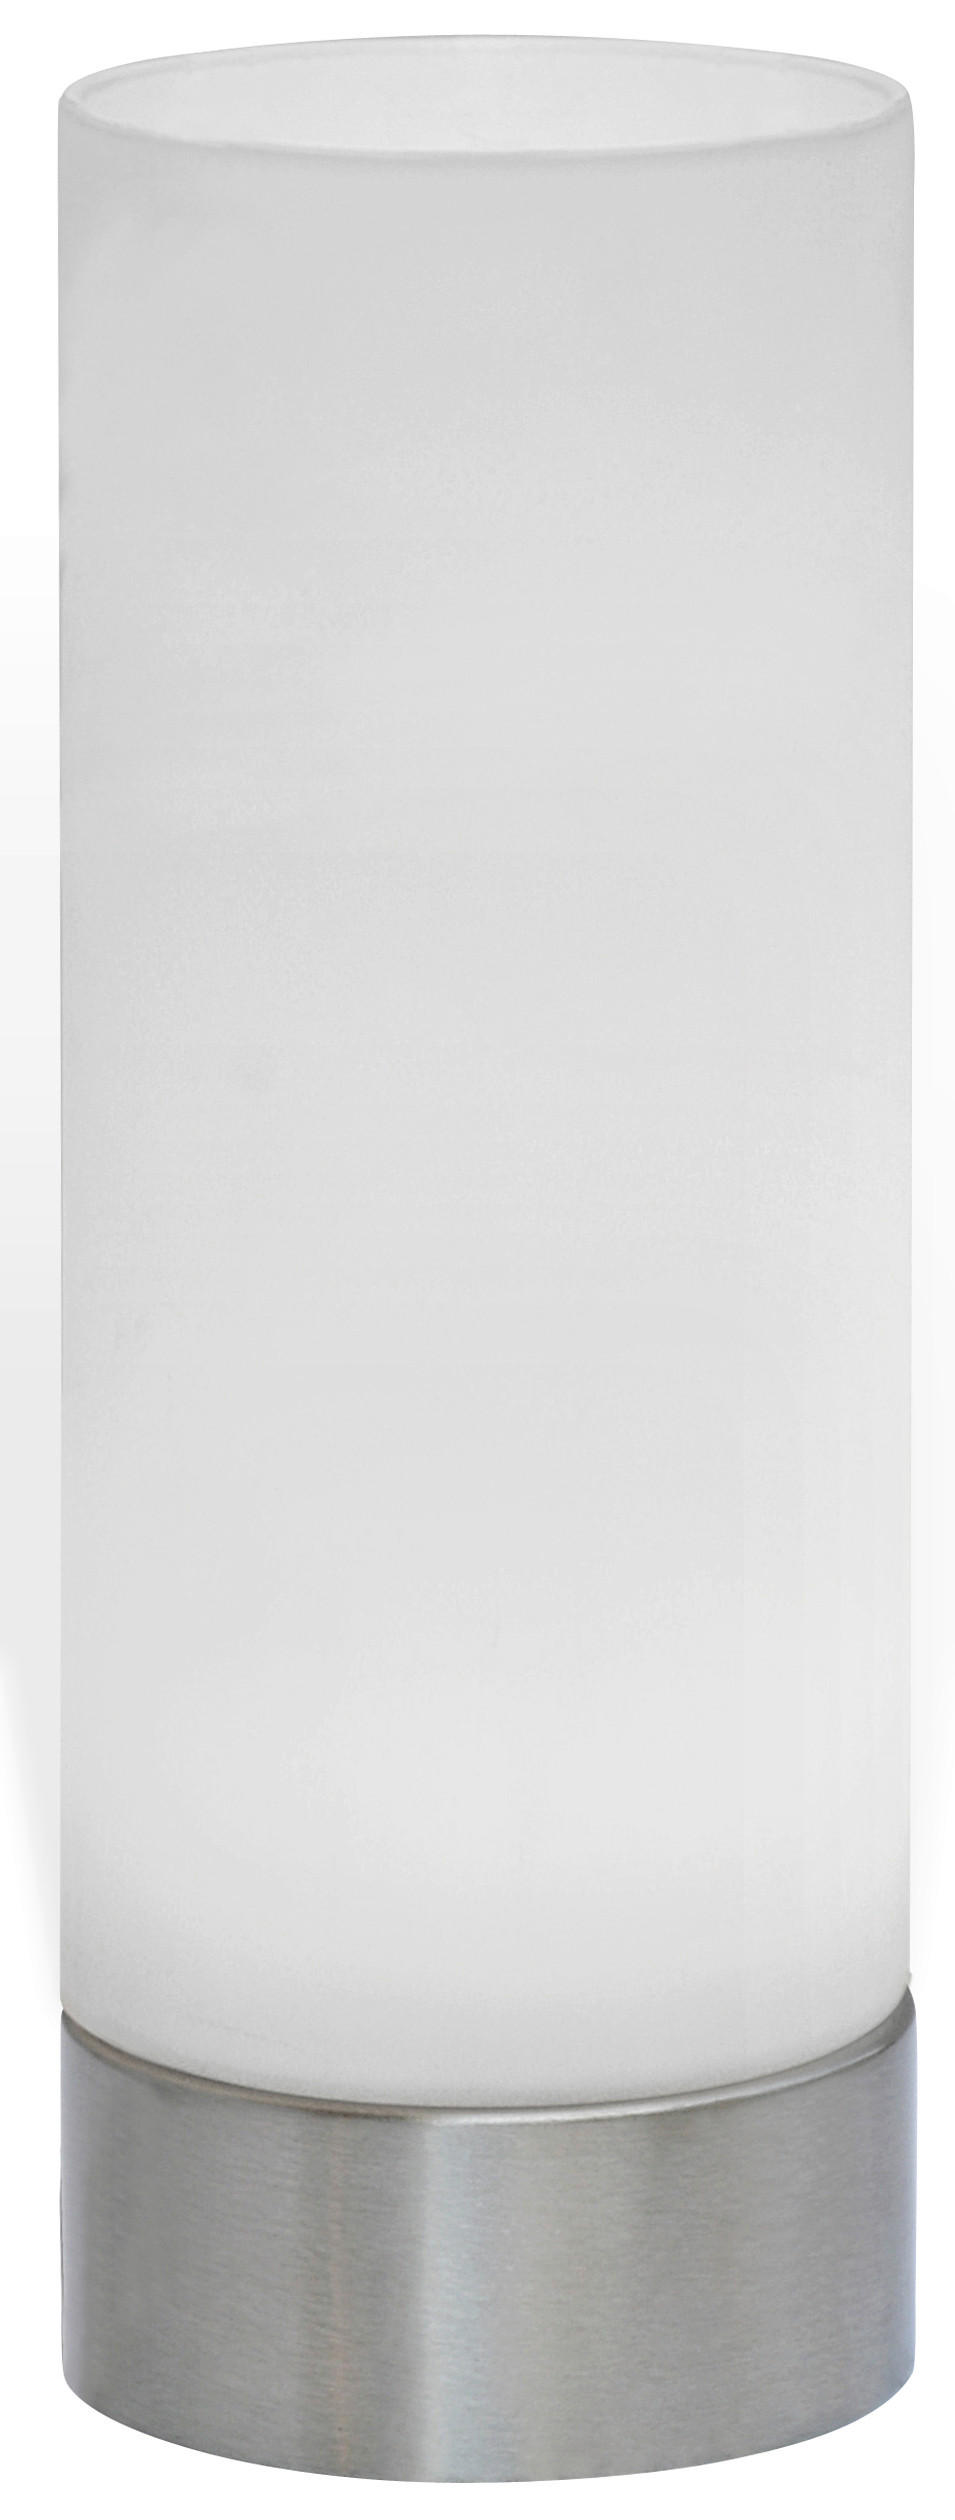 LED-TISCHLEUCHTE 8/21,5 cm   - Weiß/Nickelfarben, KONVENTIONELL, Glas/Metall (8/21,5cm) - Novel